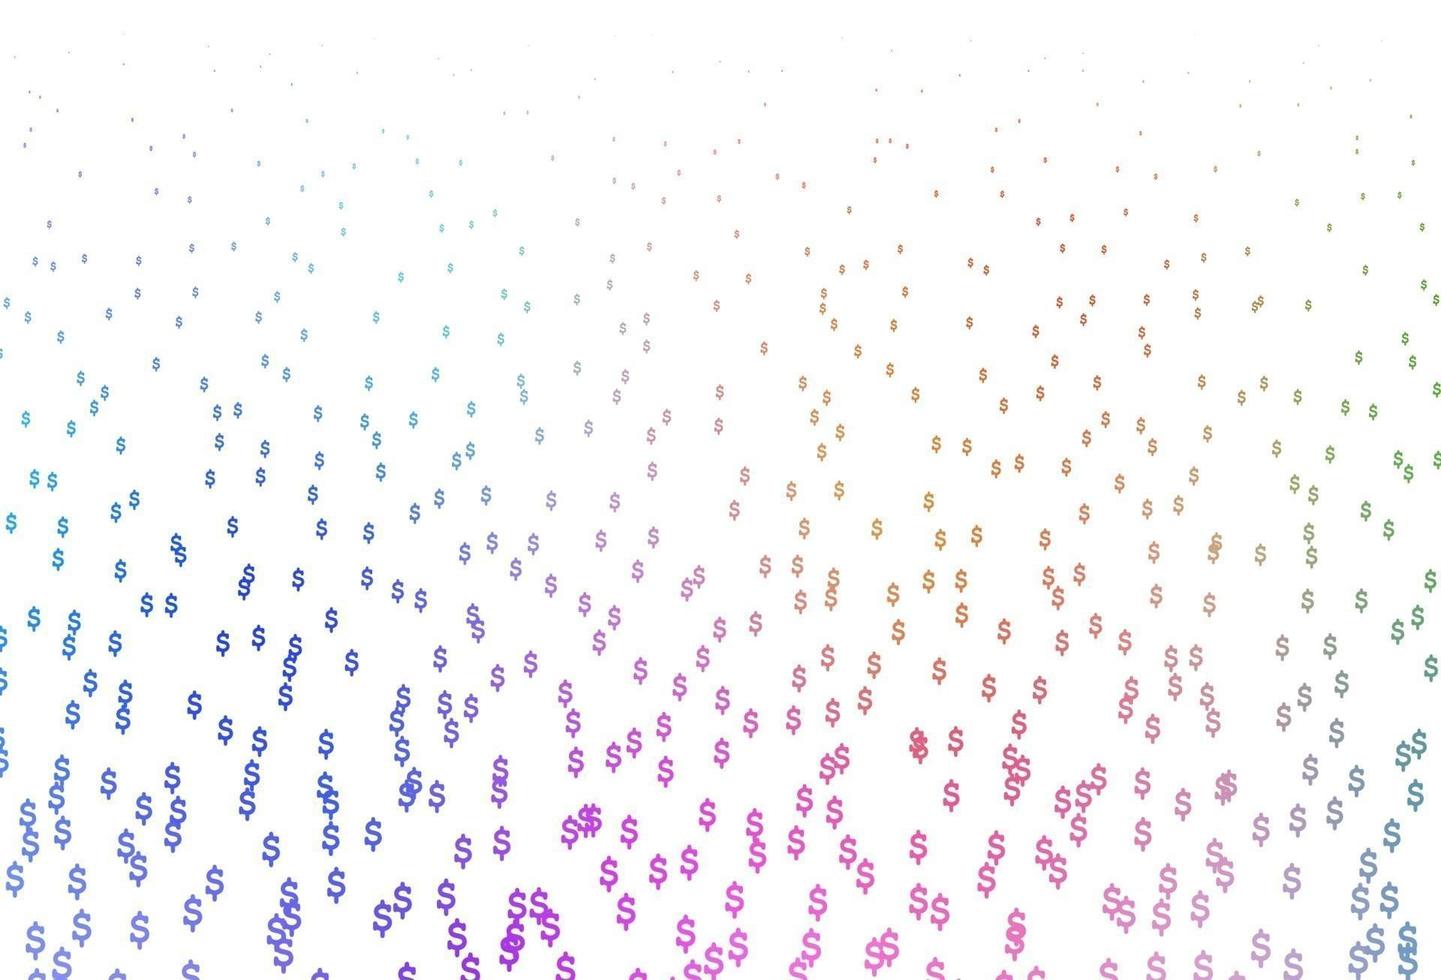 ljus flerfärgad, regnbåge vektor layout med bank symboler.